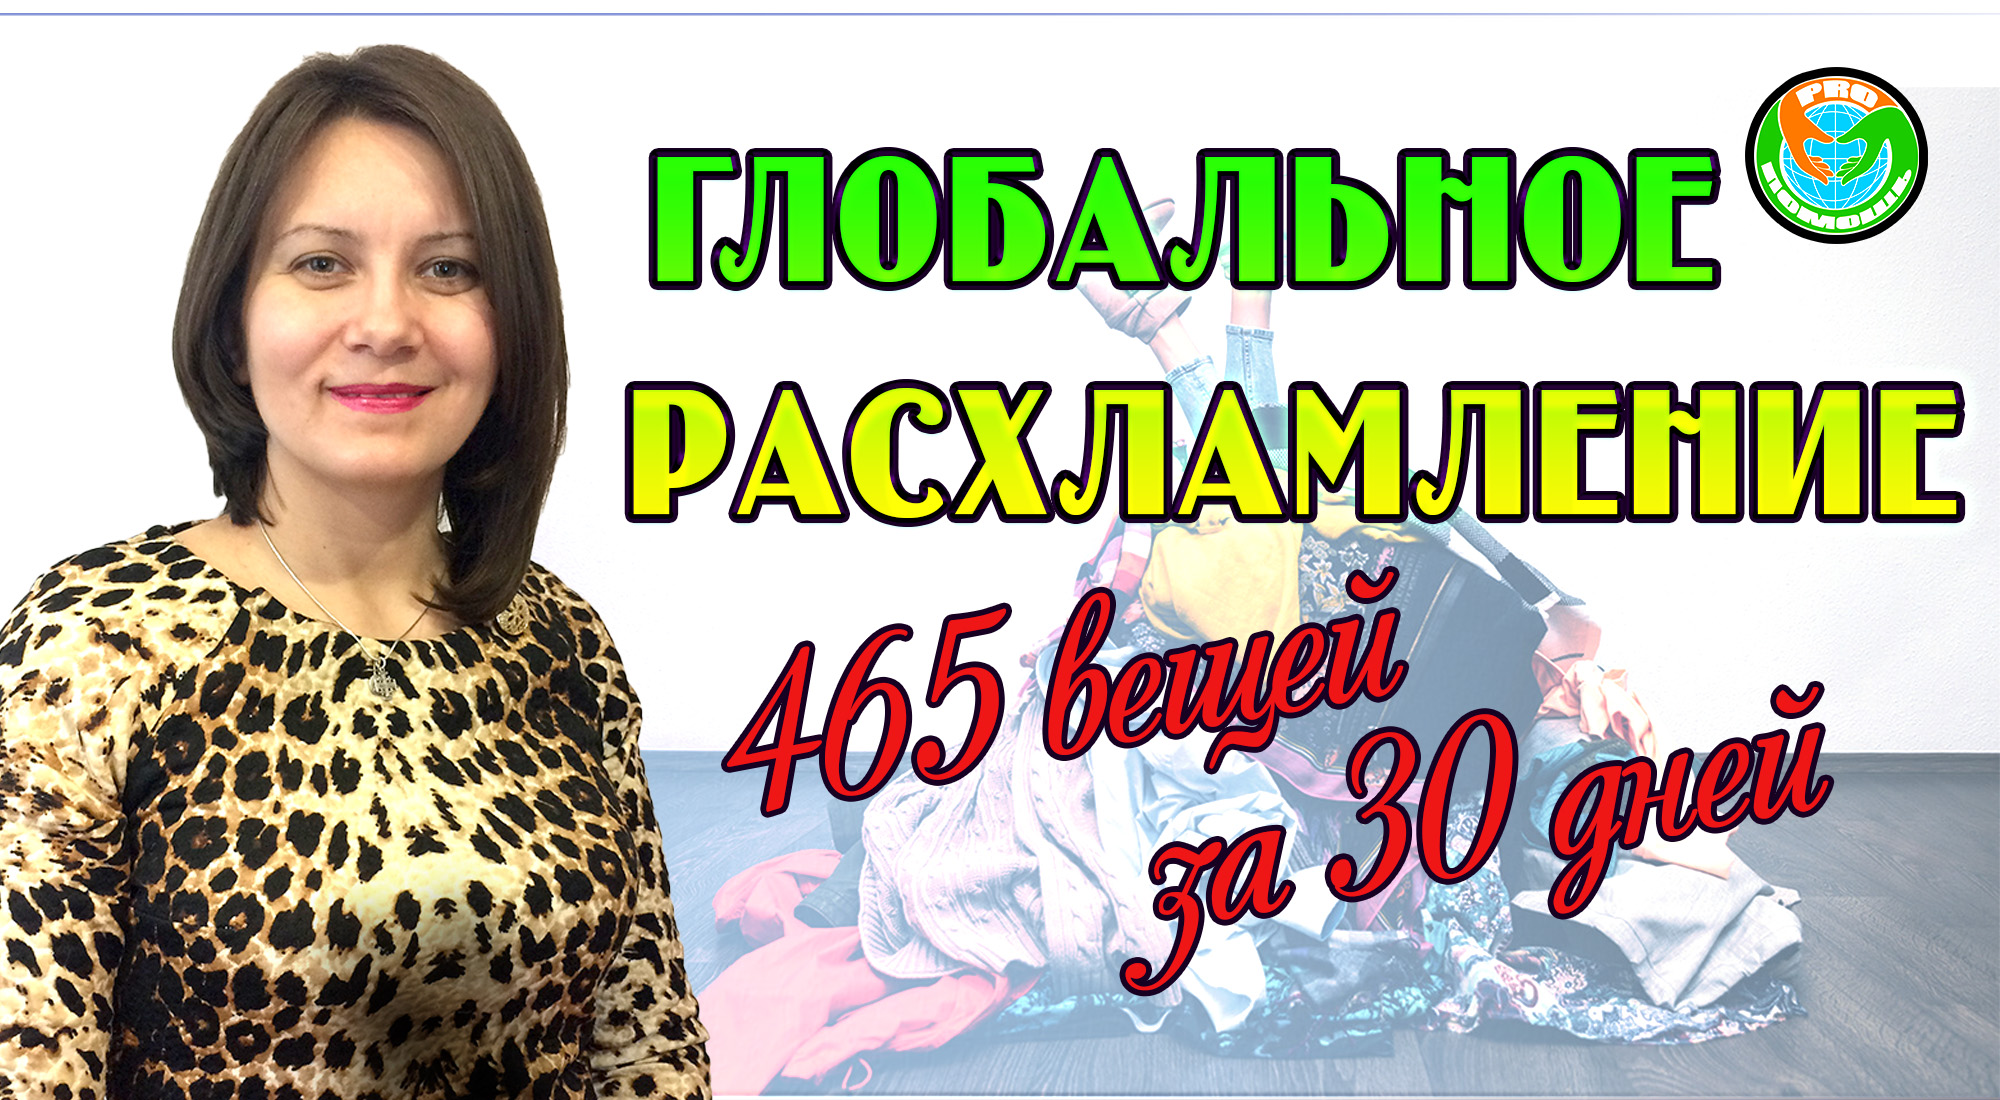 465 ВЕЩЕЙ ЗА 30 ДНЕЙ! // ИГРА МИНИМАЛИСТА // ГЛОБАЛЬНОЕ РАСХЛАМЛЕНИЕ